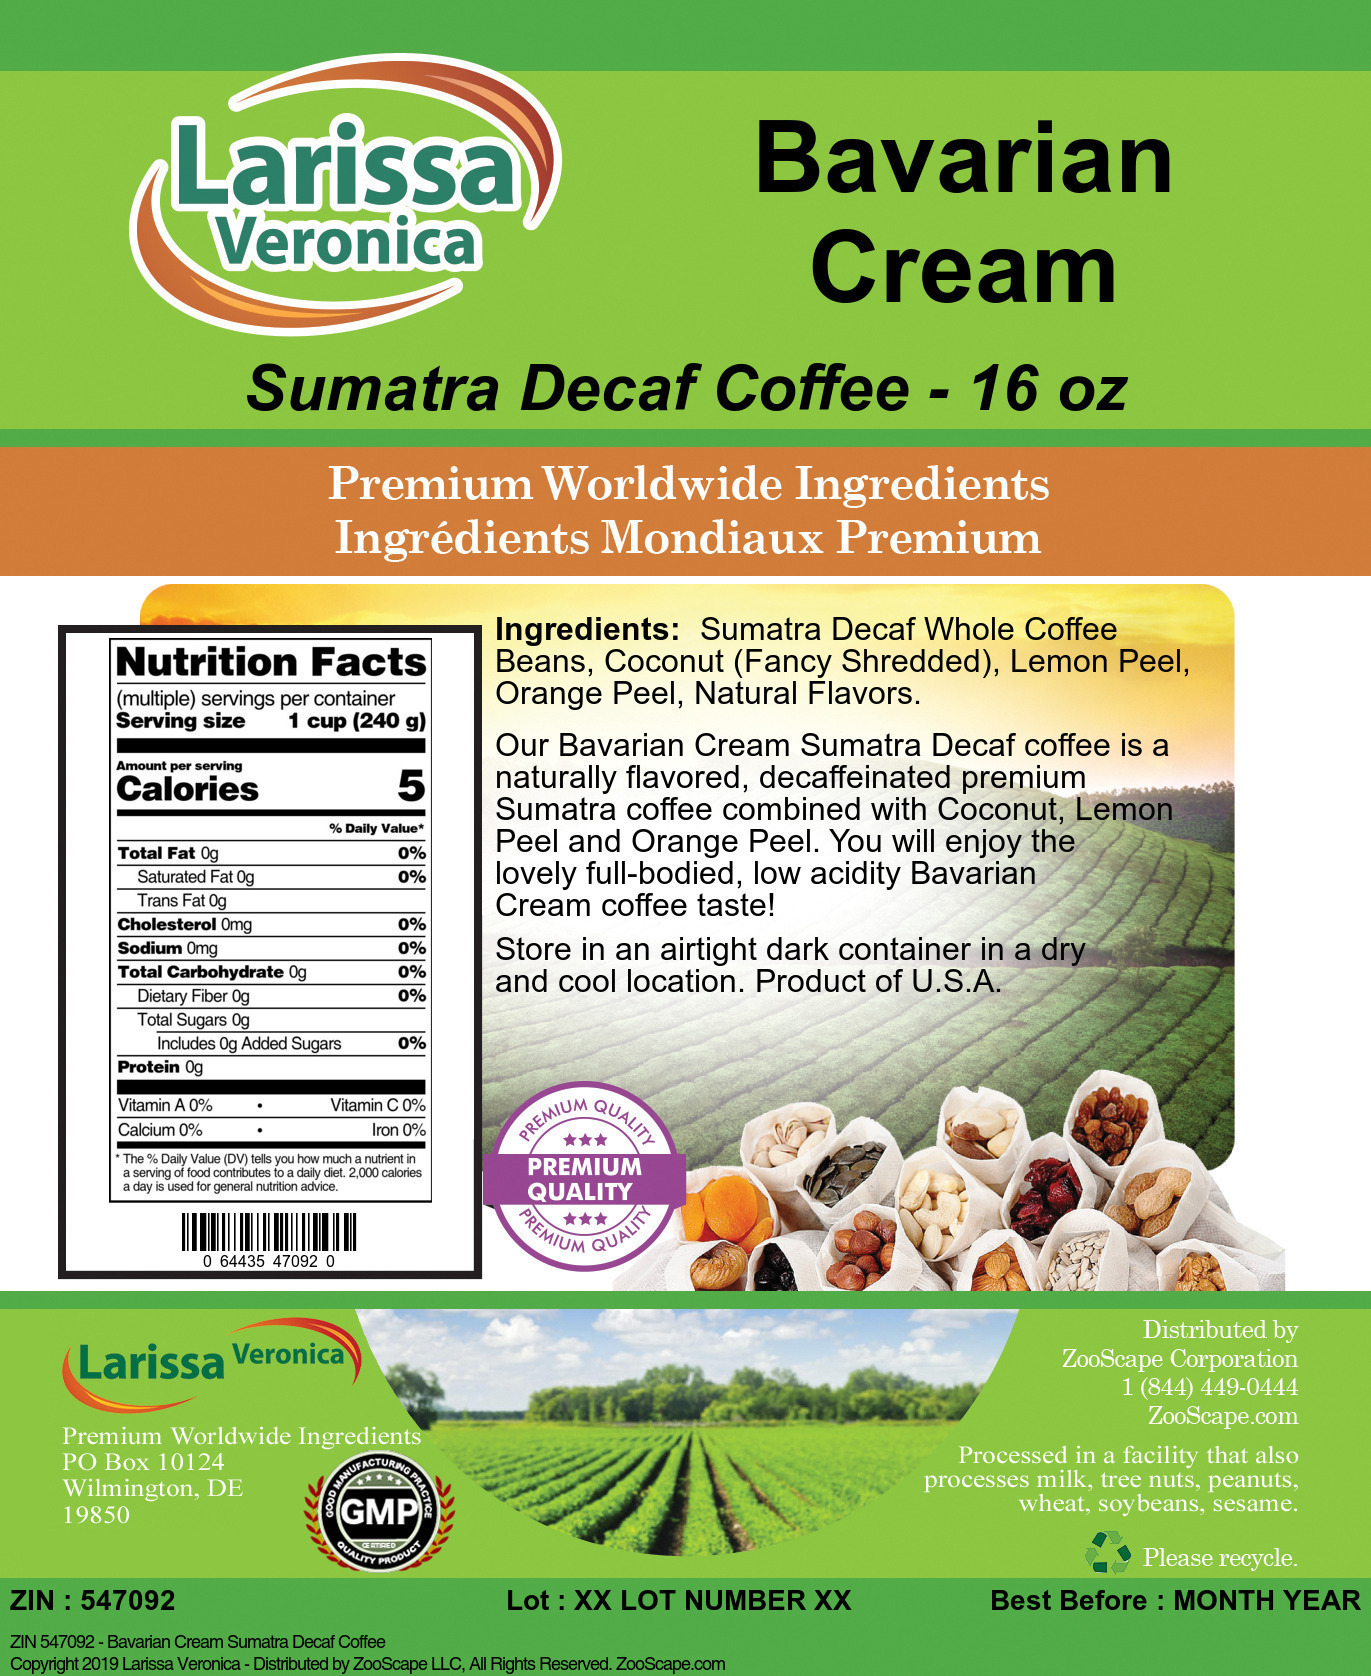 Bavarian Cream Sumatra Decaf Coffee - Label